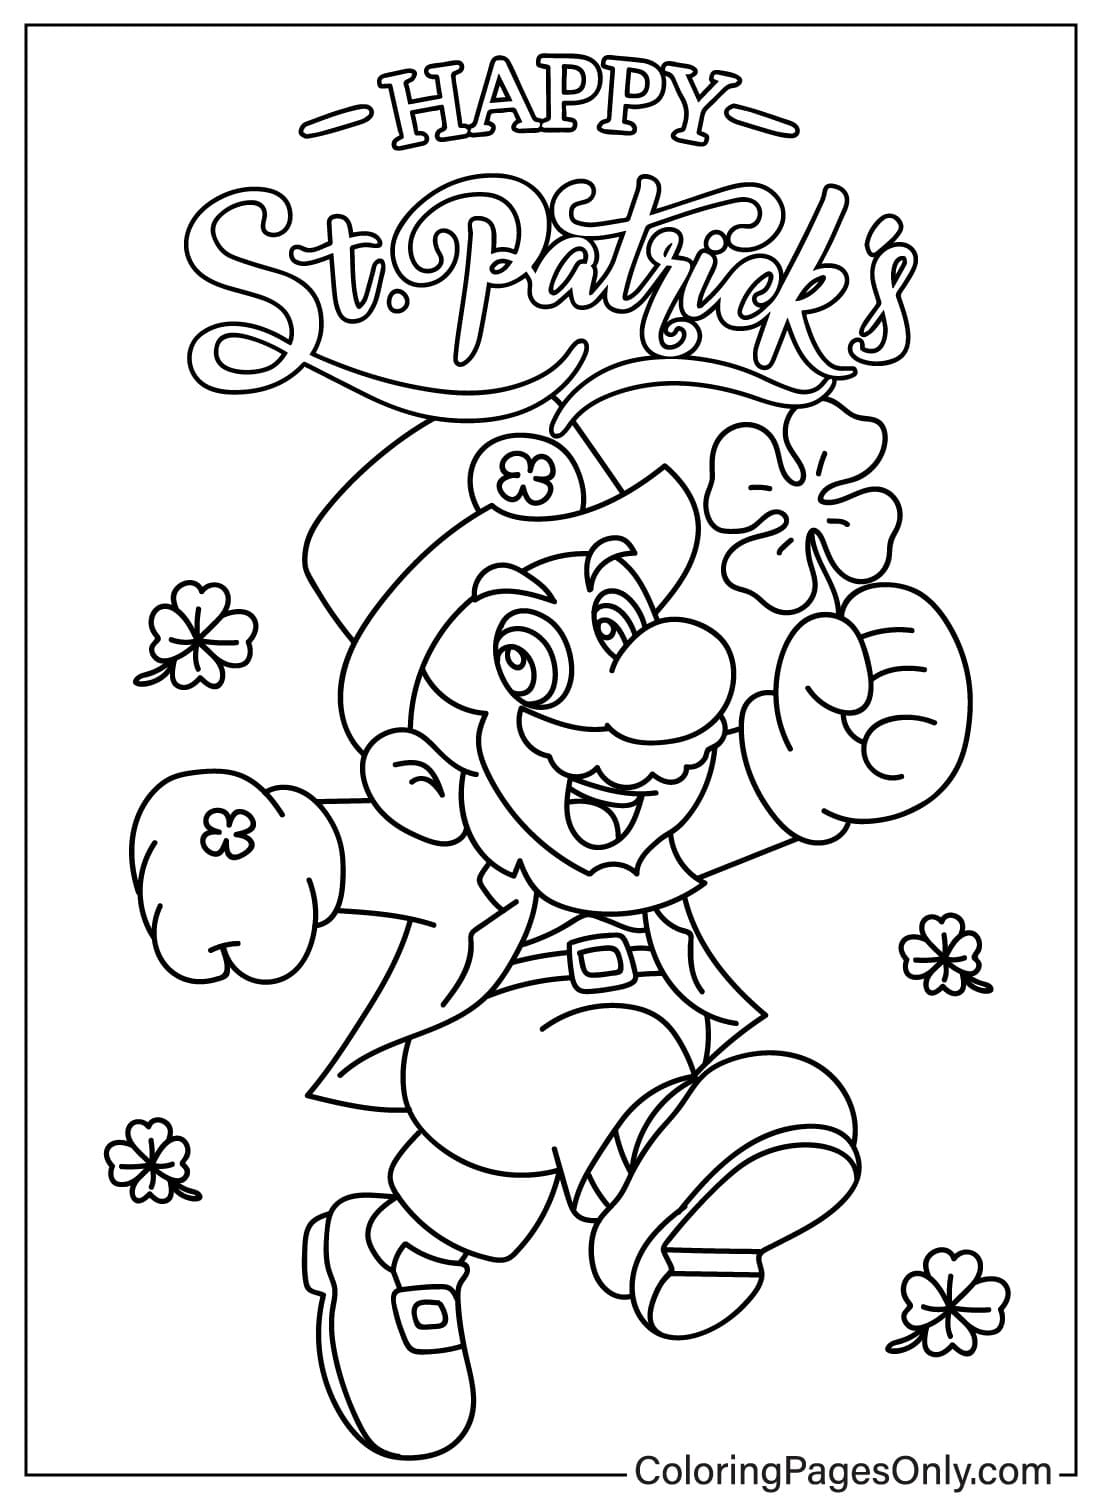 Mario Happy St. Patricks Day Coloring Page